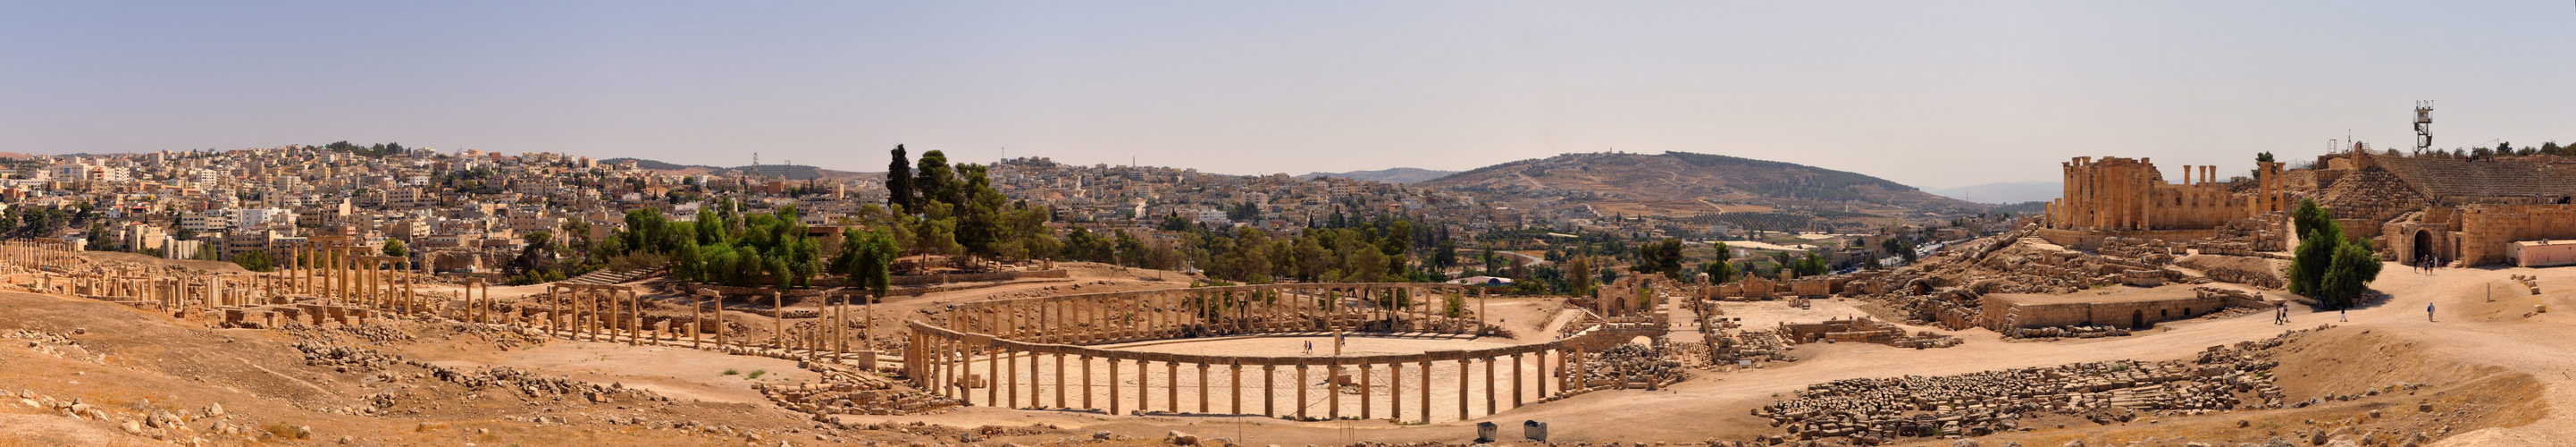 Jerash Panorama Ovales Forum